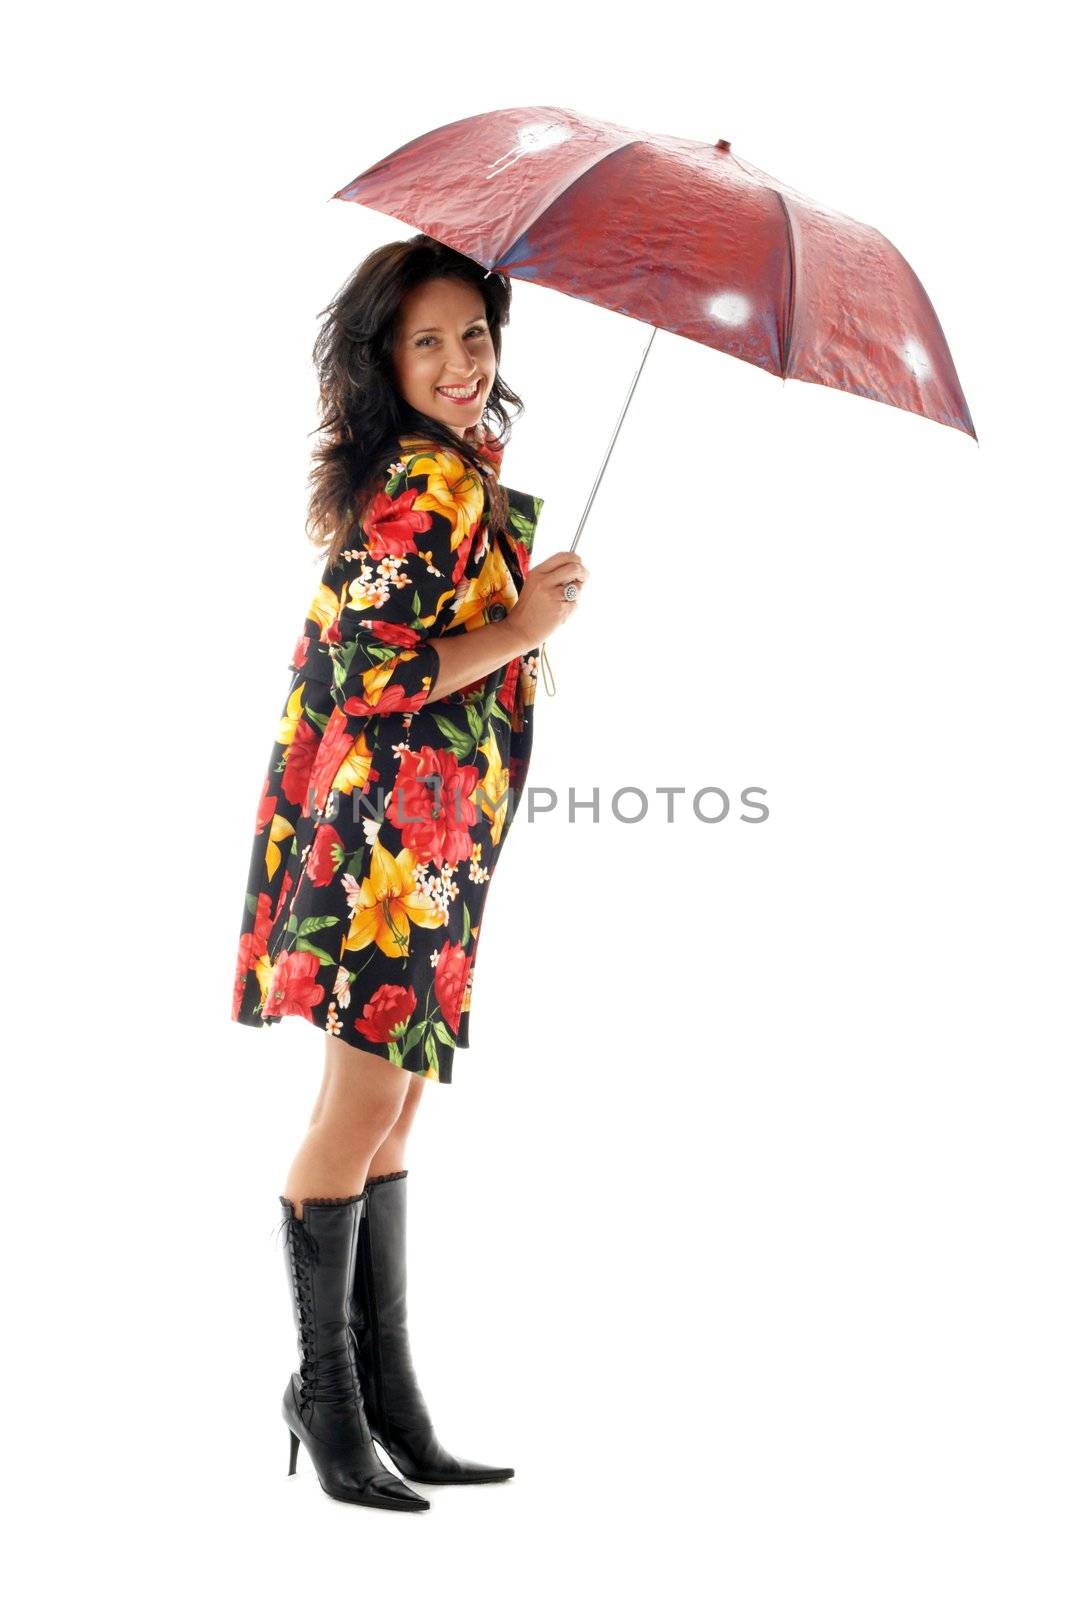 umbrella girl #2 by dolgachov